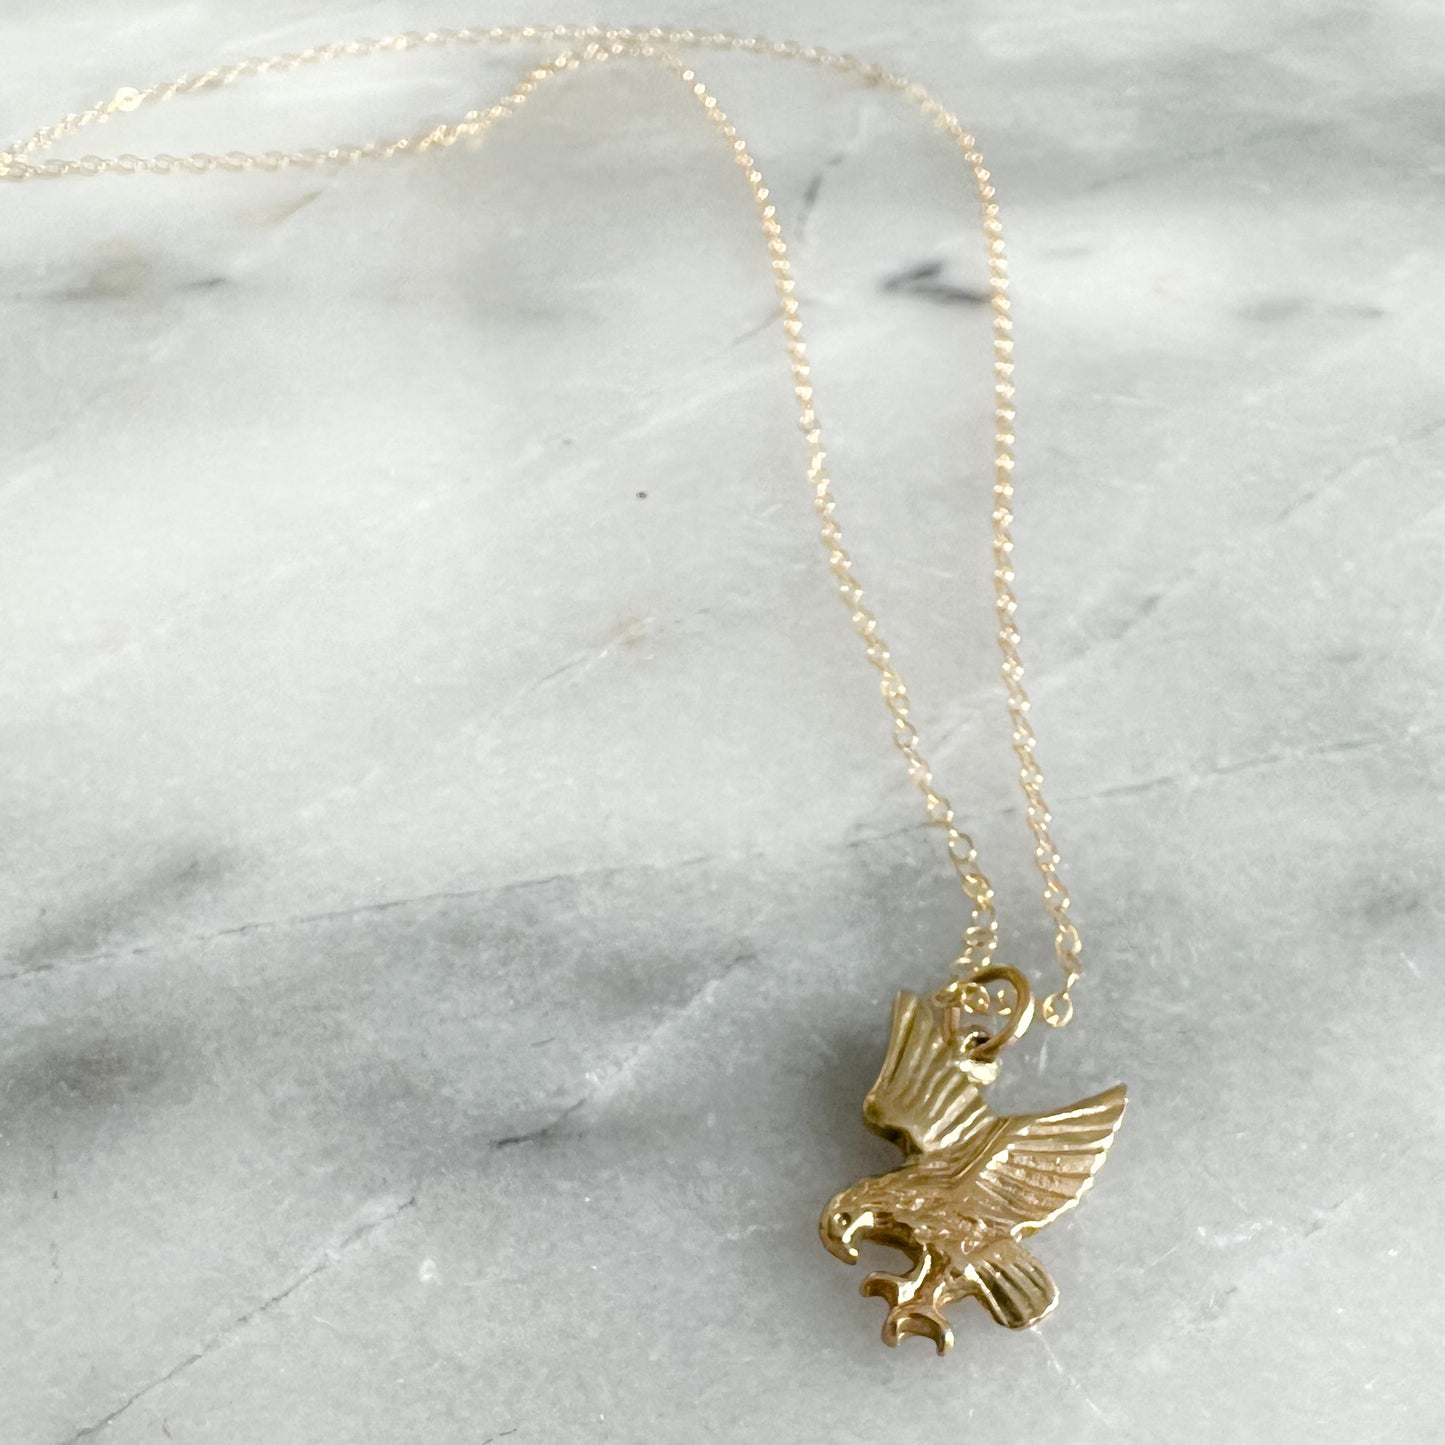 Vintage Flying Eagle Gold Necklace - BelleStyle